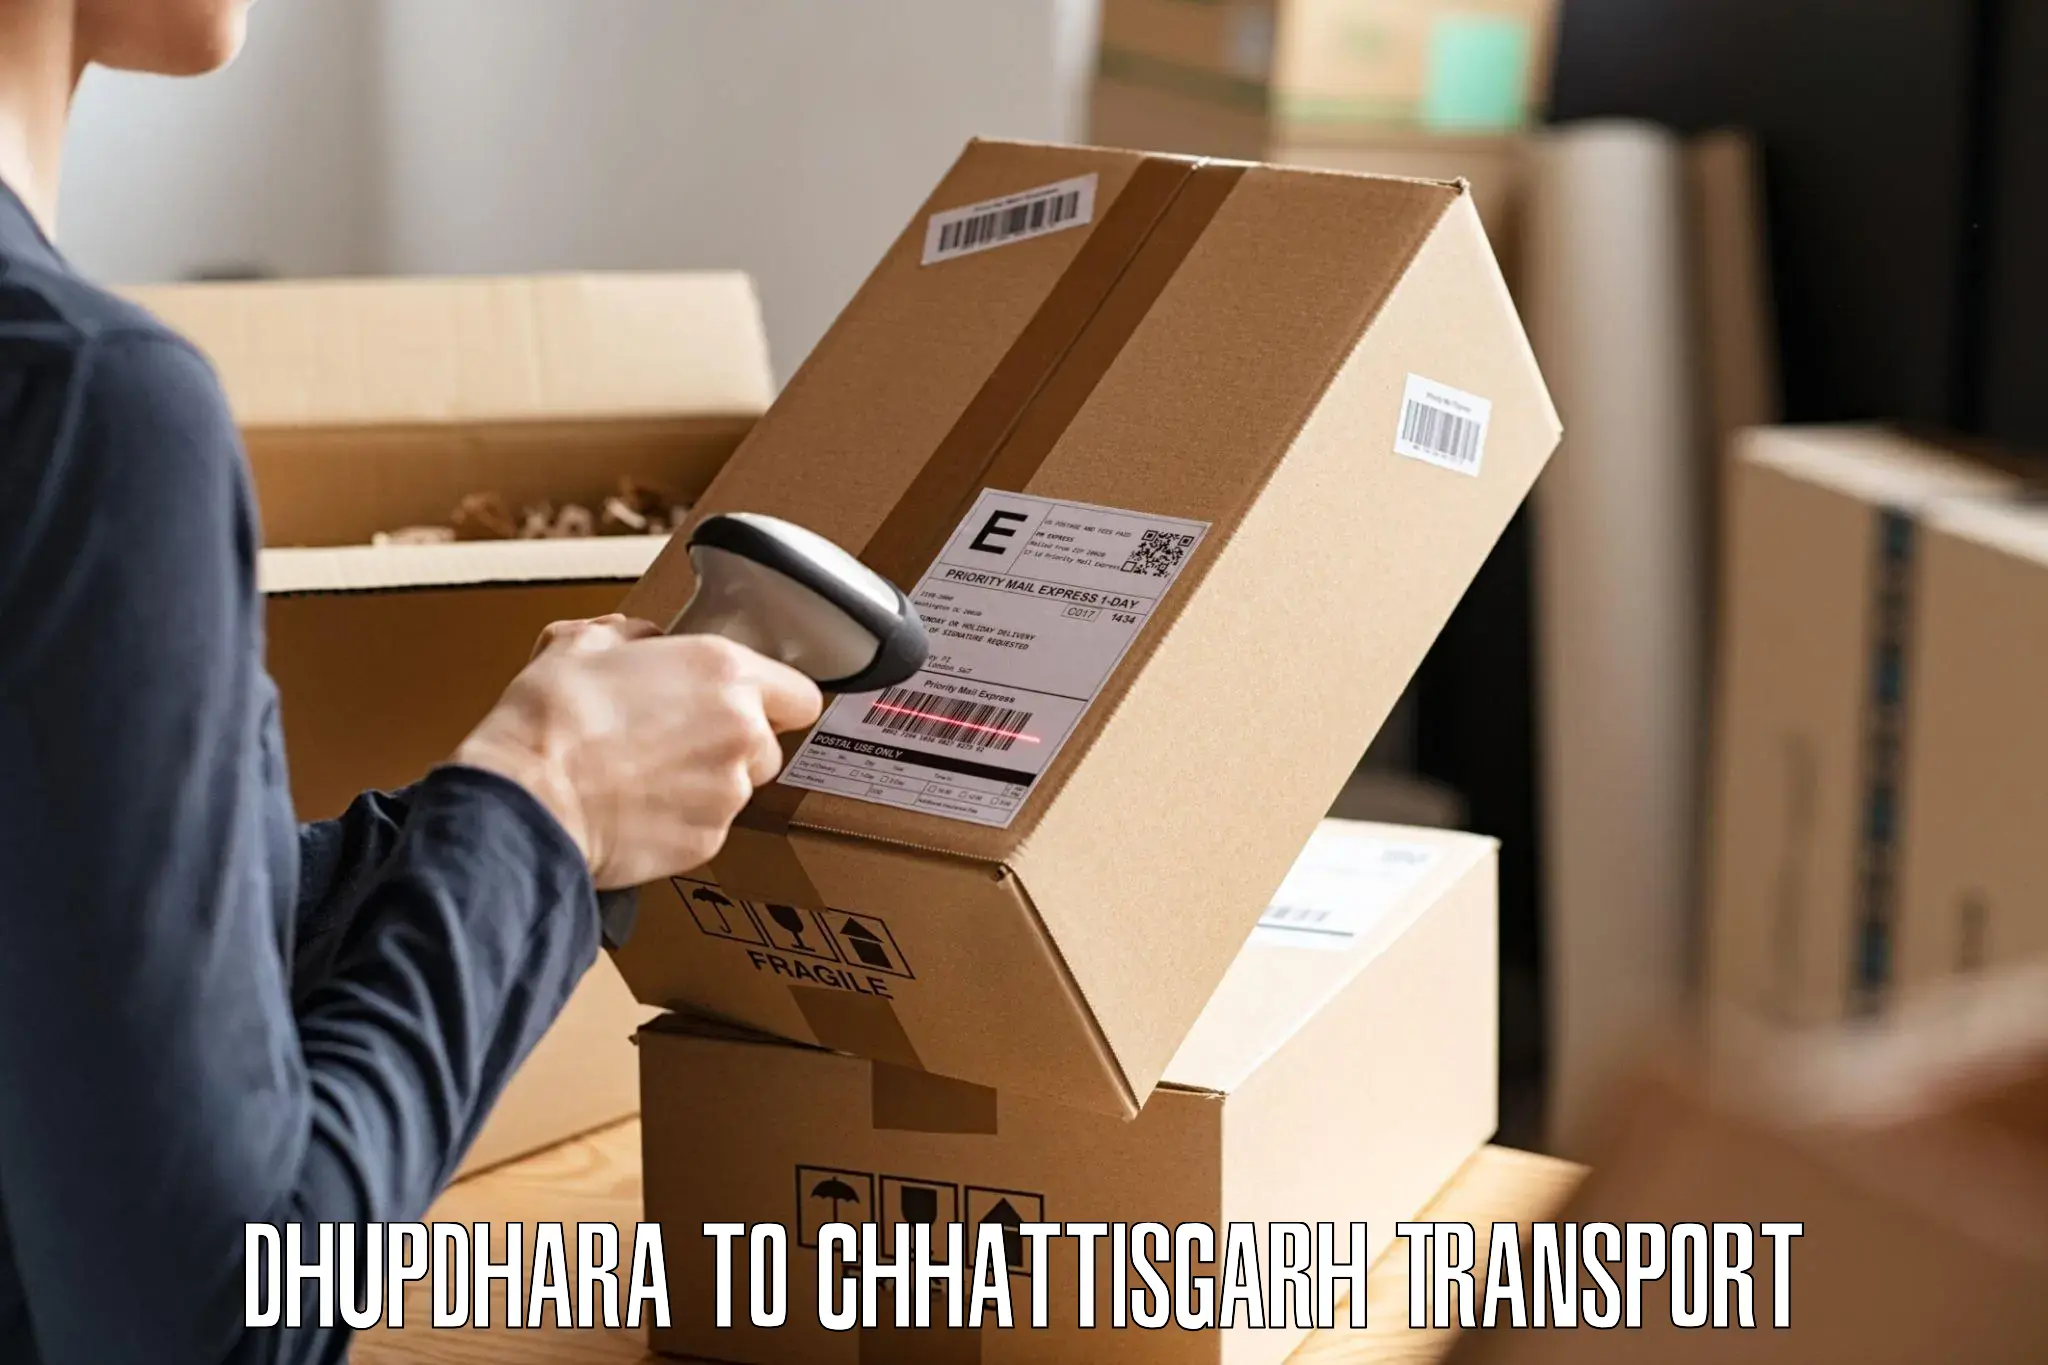 Express transport services Dhupdhara to bagbahra